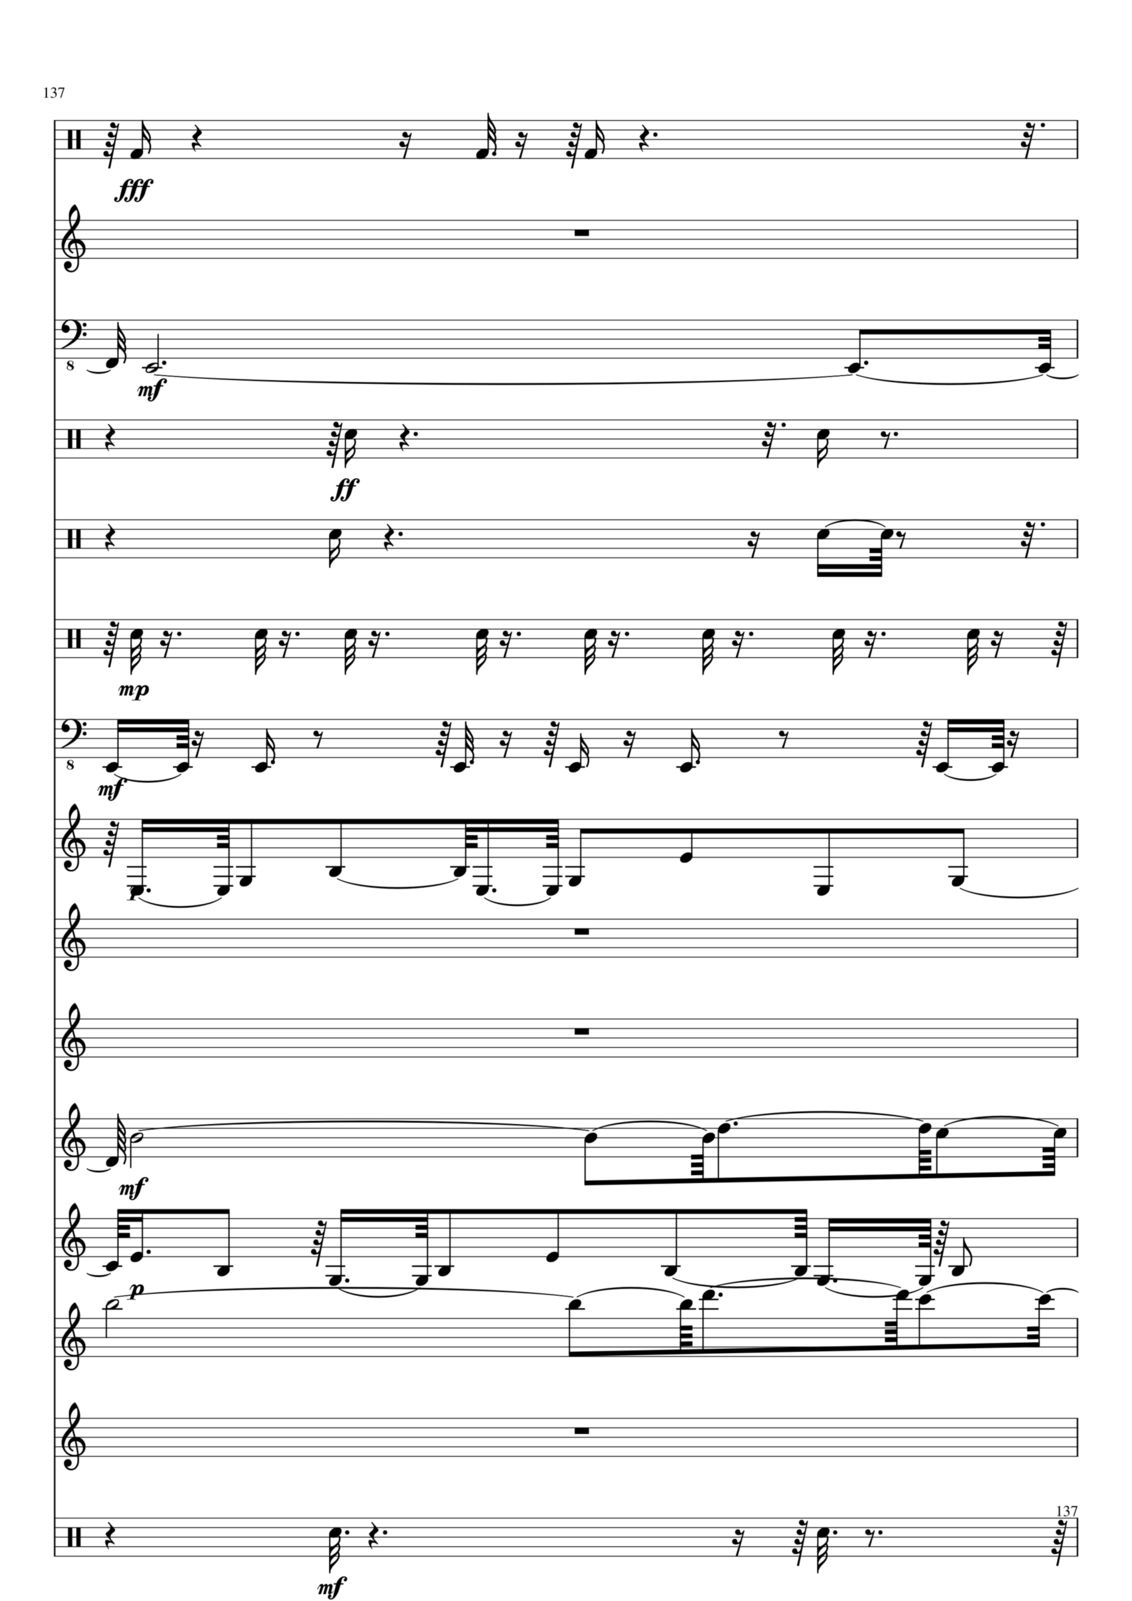 Utro polinyi slide, Image 137